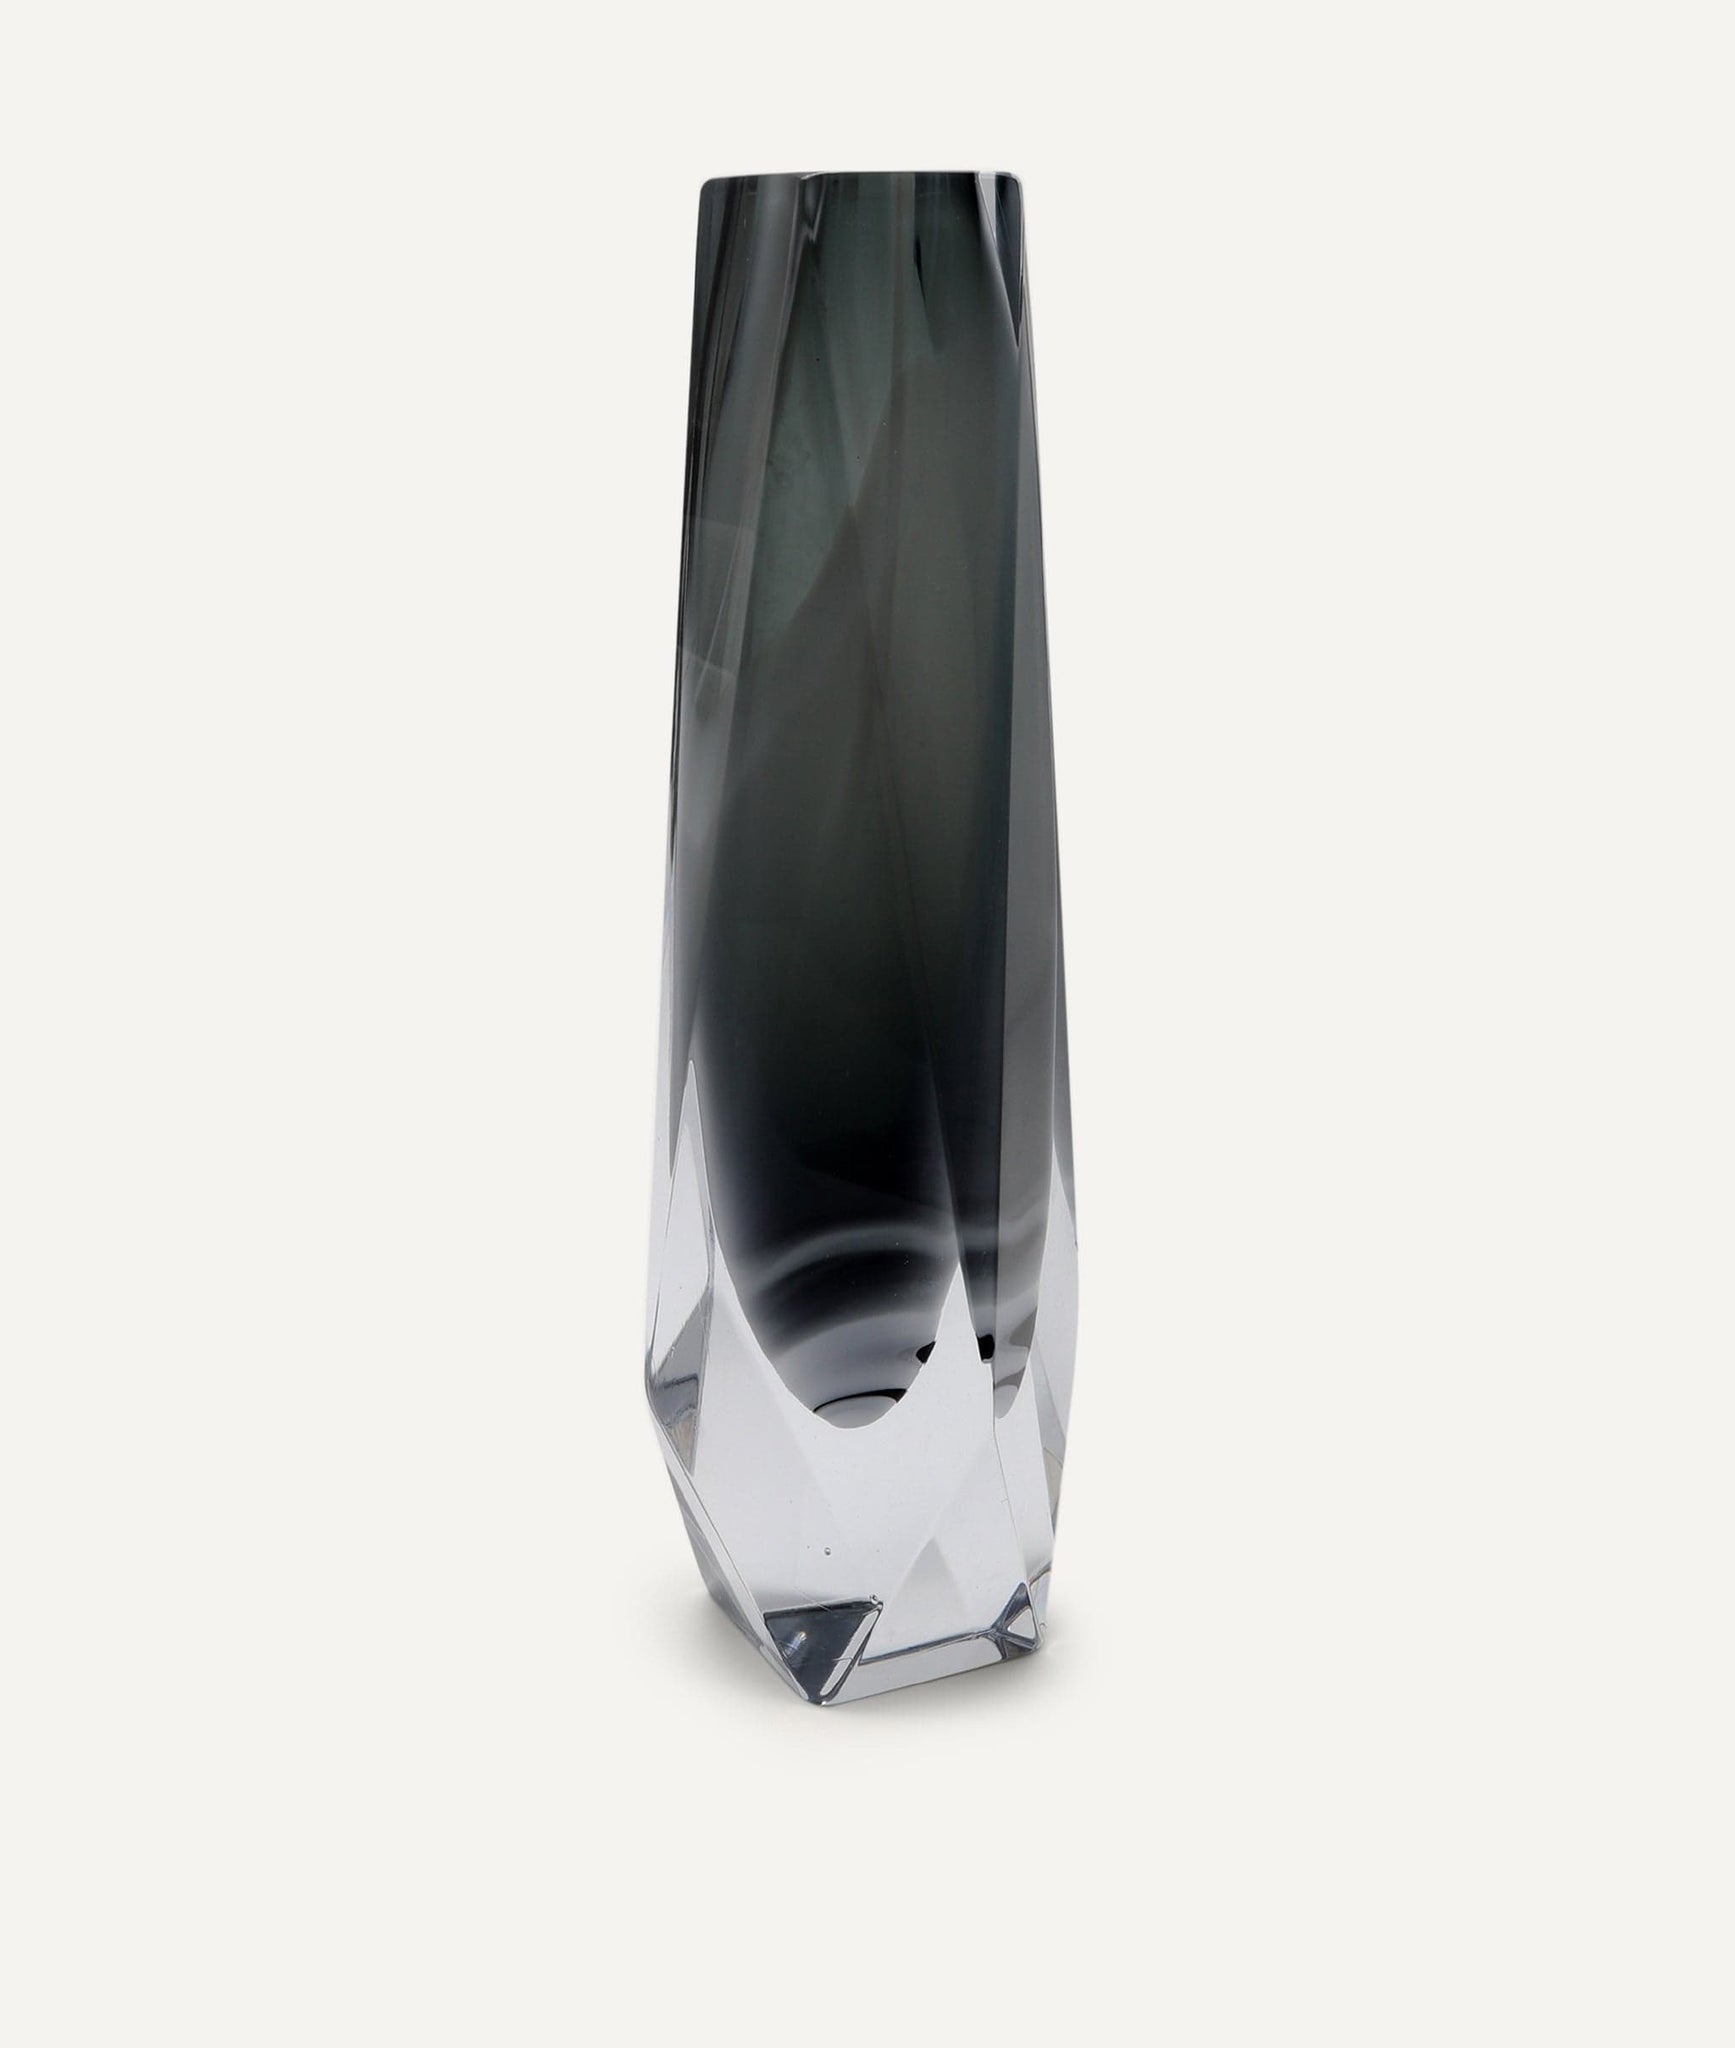 Goccia Vase in Murano Glass